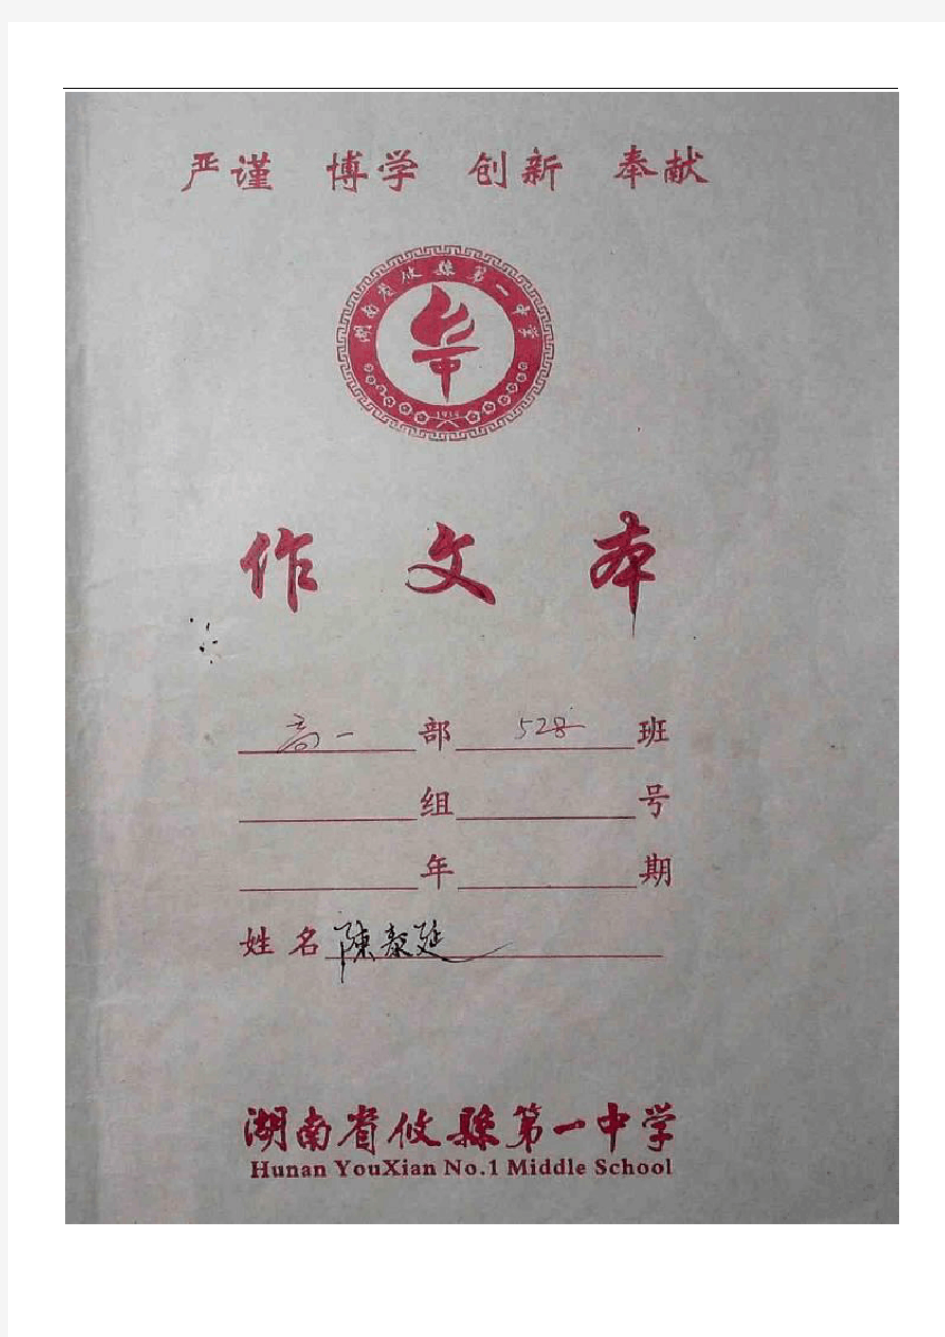 2017年下期攸县一中高一年级528班陈泰延同学语文作业